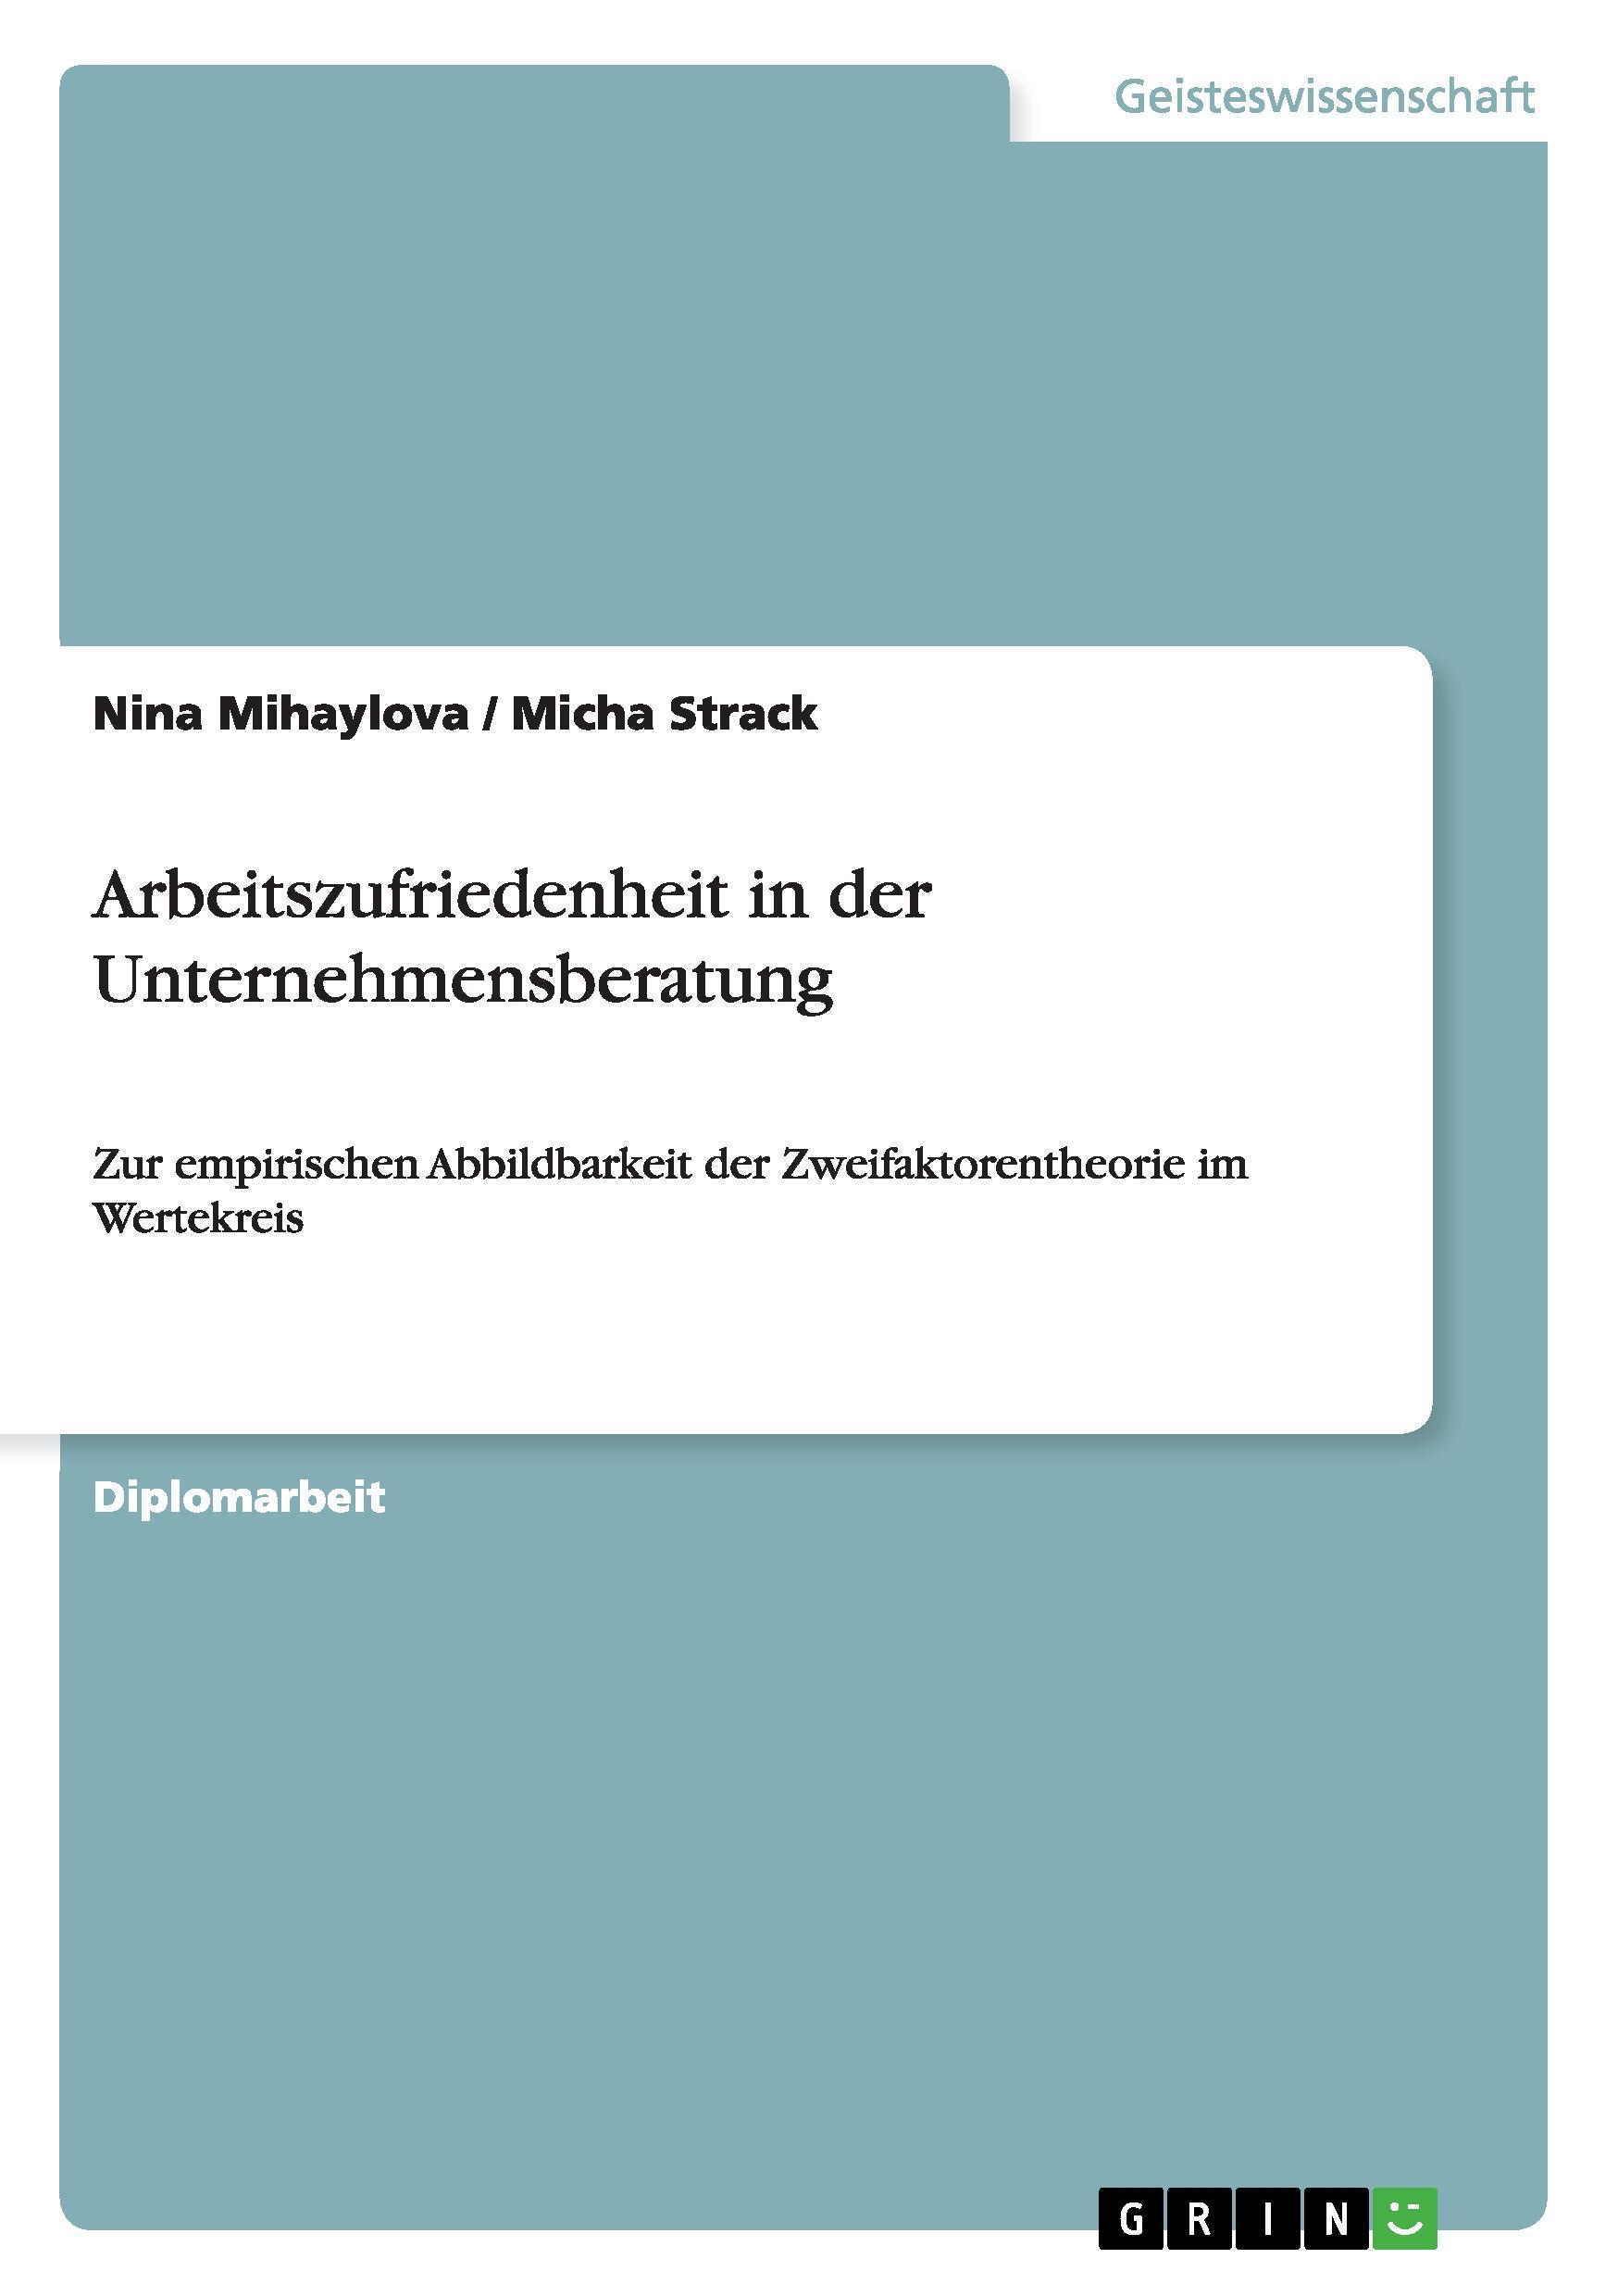 Arbeitszufriedenheit in der Unternehmensberatung - Mihaylova, Nina Strack, Micha